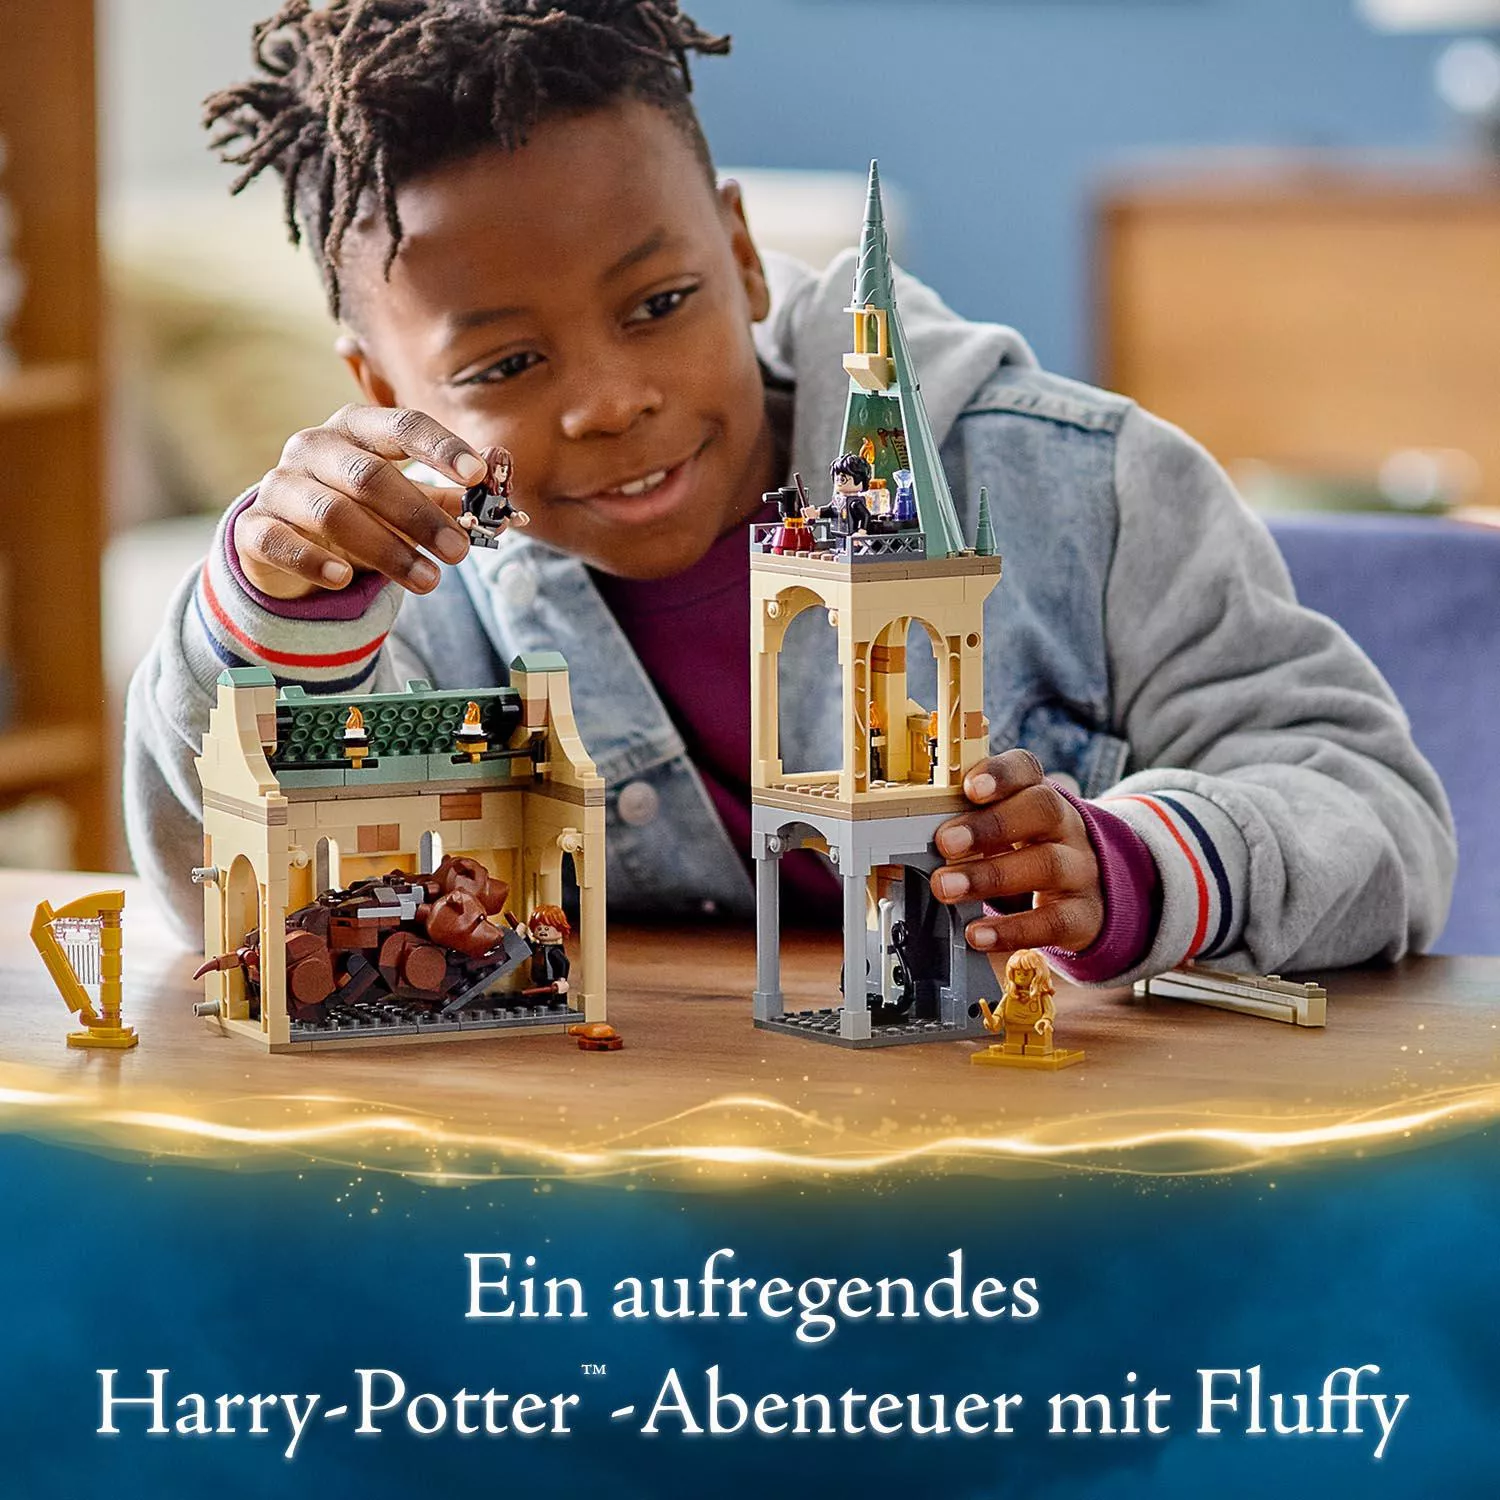 LEGO 76387 Harry Potter Hogwarts: Begegnung mit Fluffy